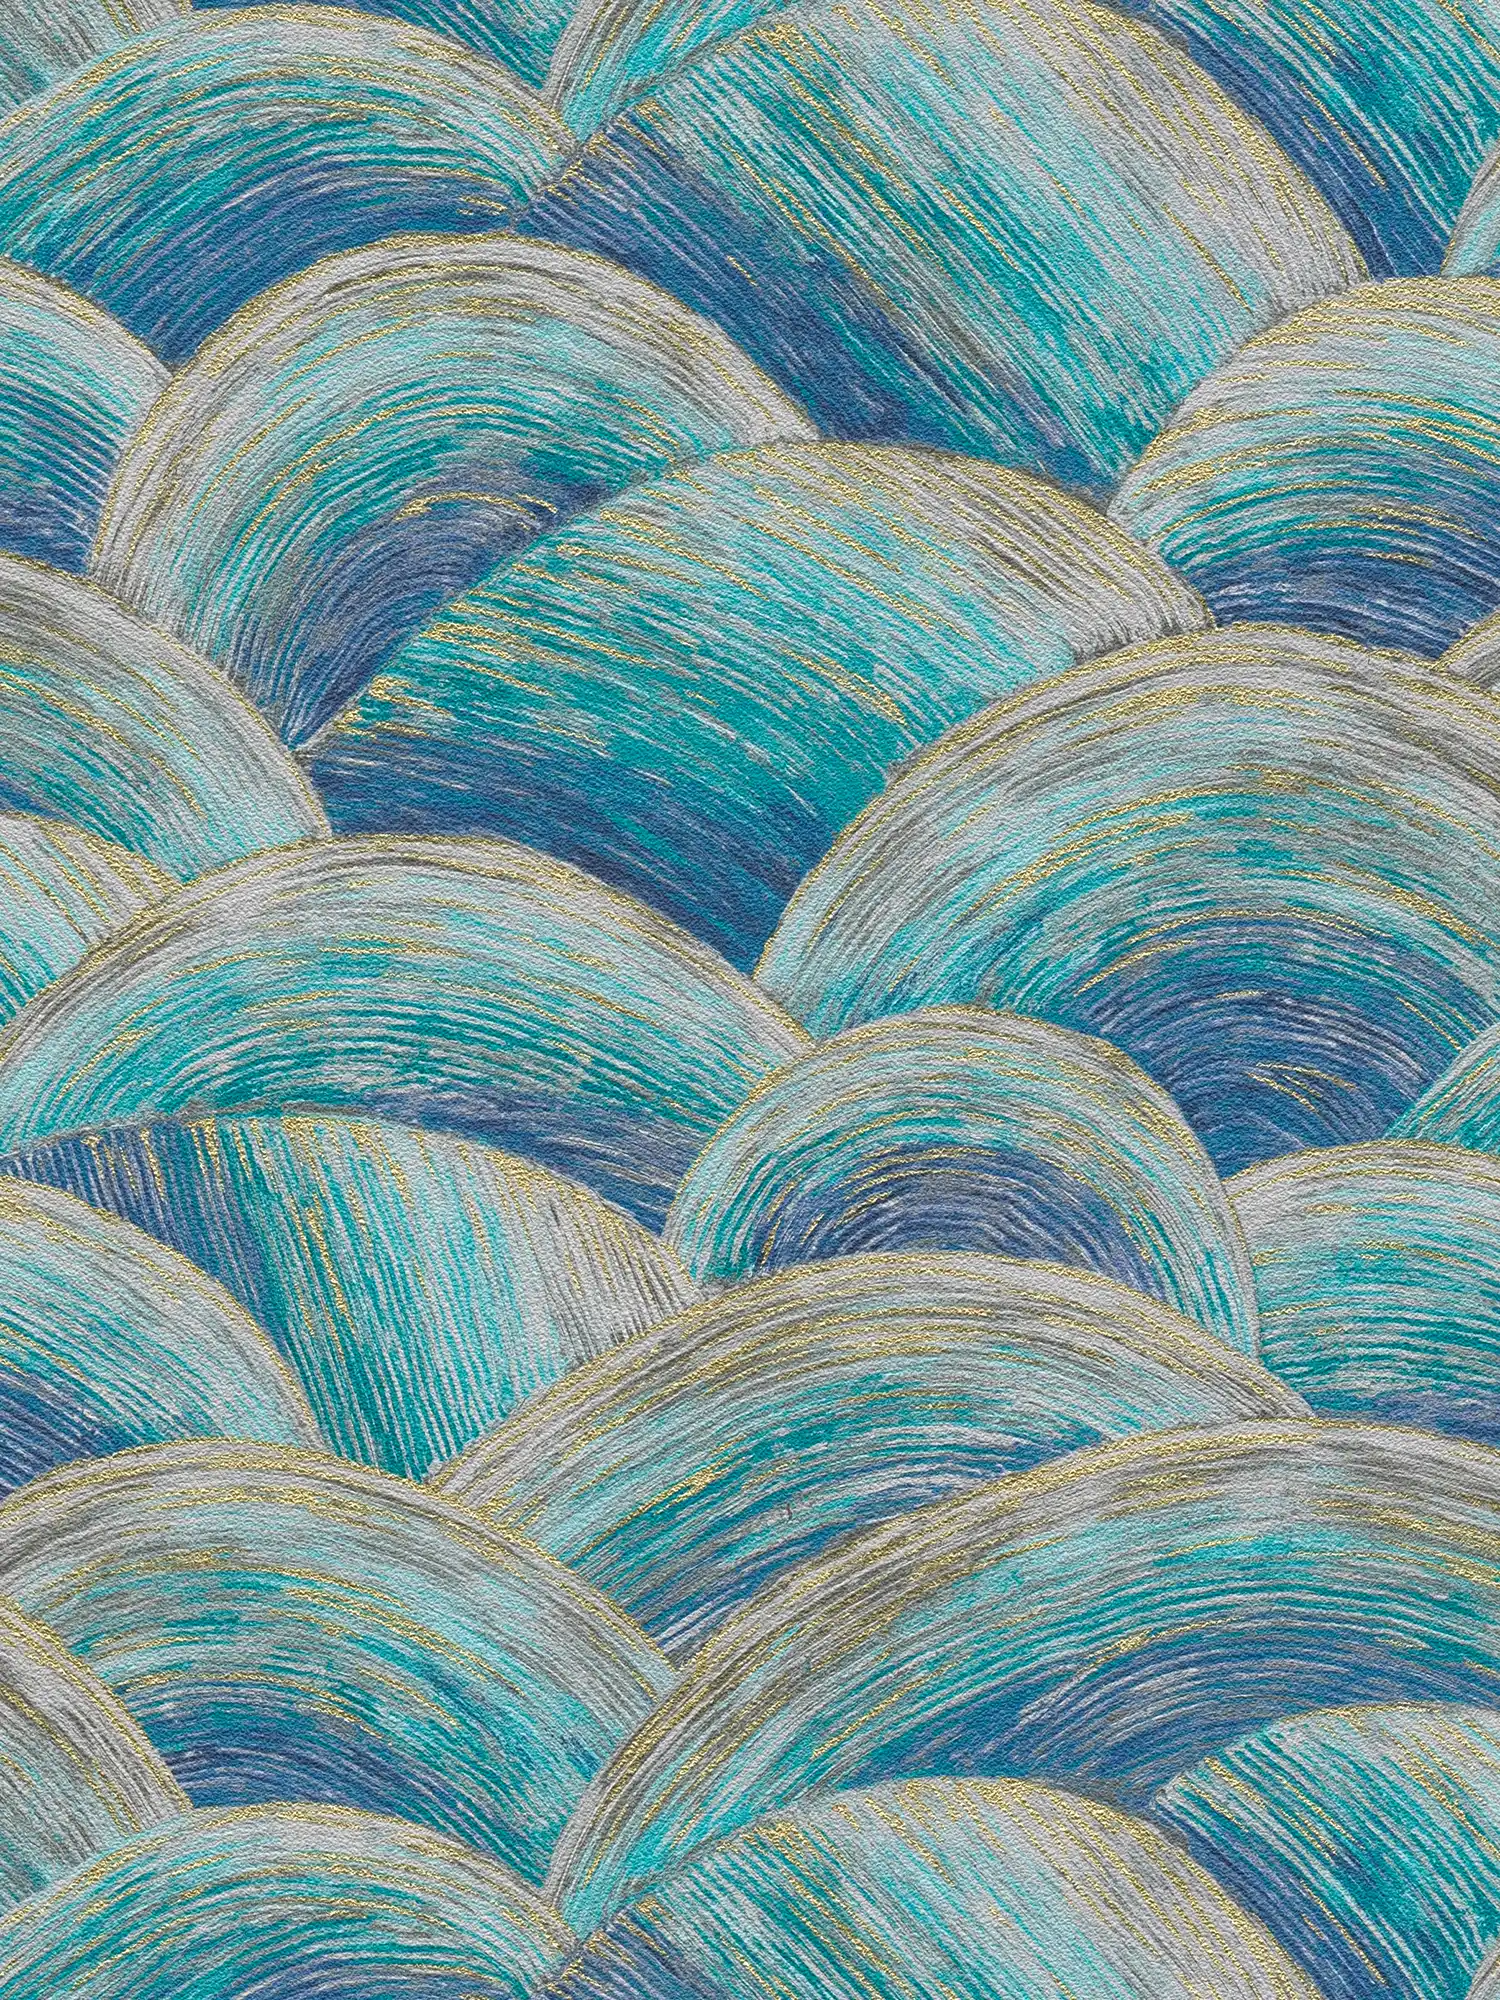 Papel pintado tejido-no tejido abstracto con motivo ondulado y efecto brillante - azul, turquesa, dorado
